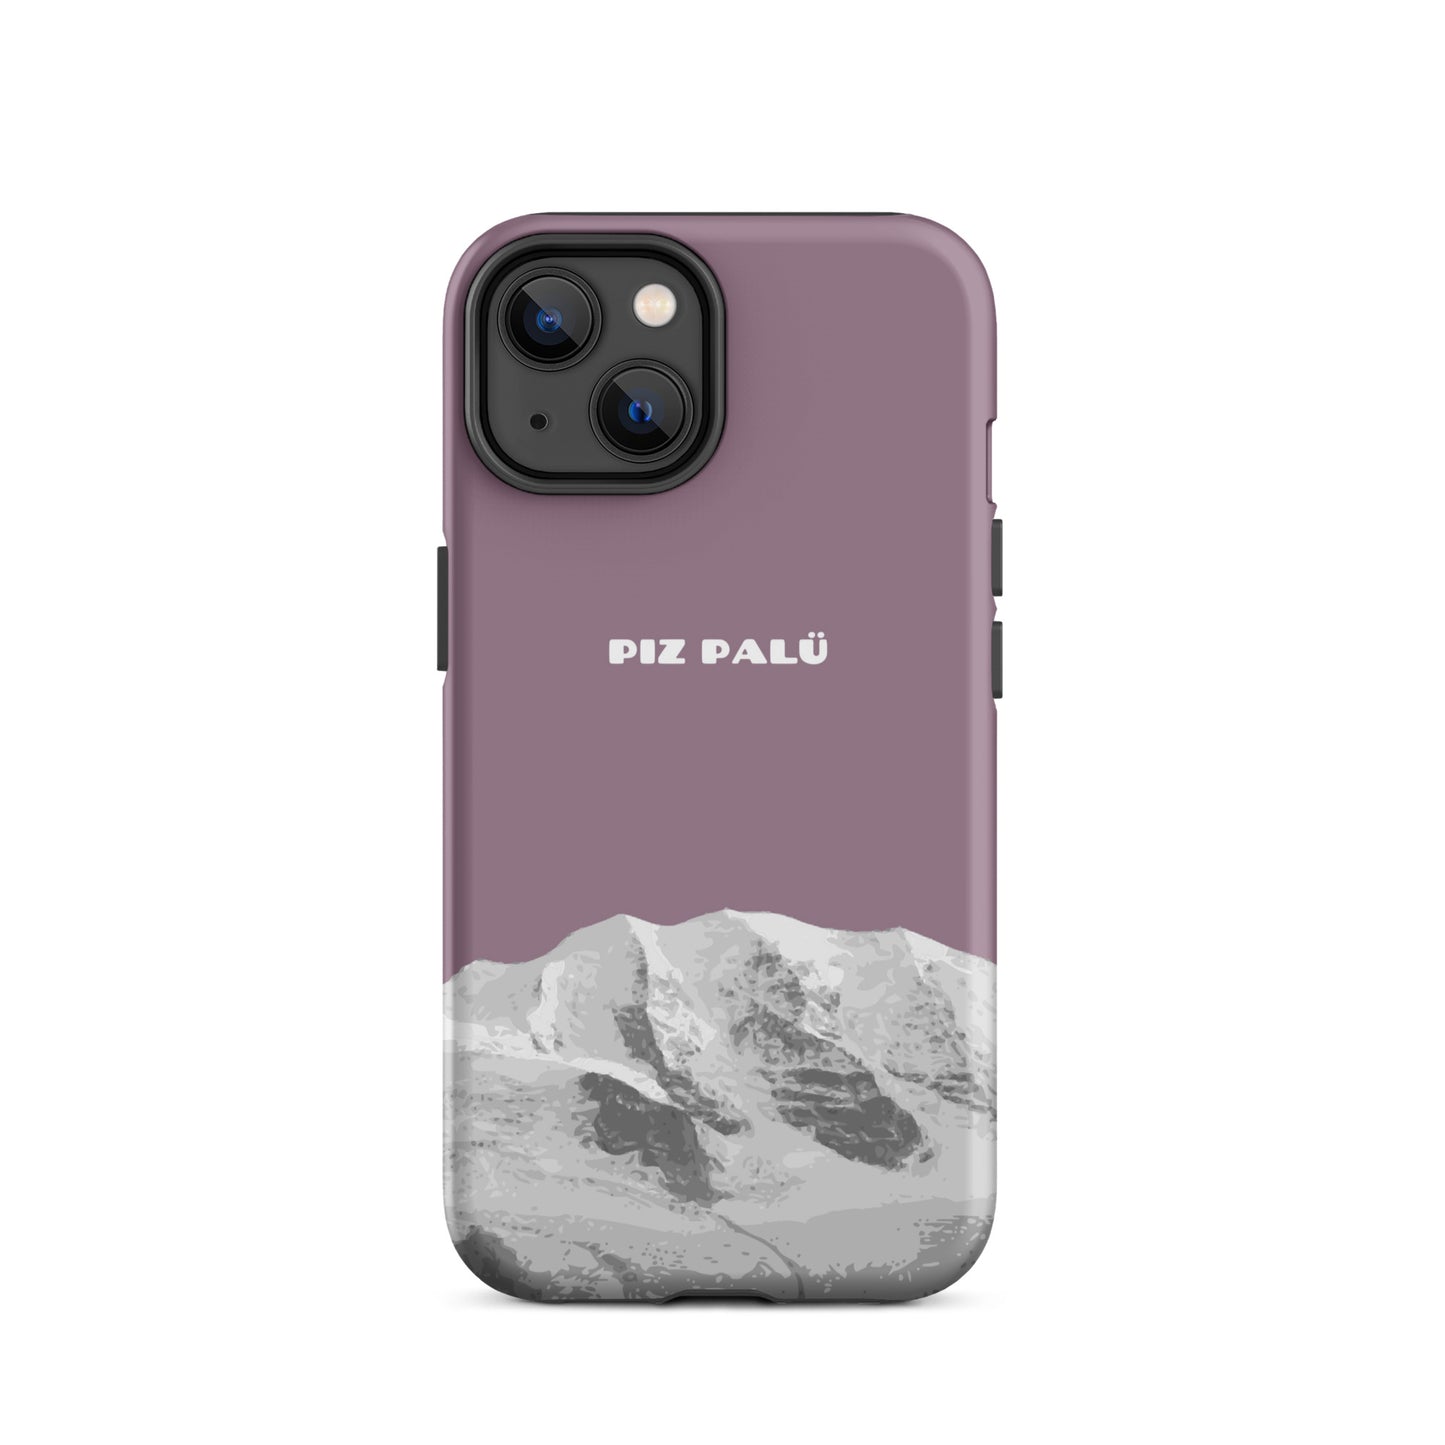 Hülle für das iPhone 14 von Apple in der Farbe Pastellviolett, dass den Piz Palü in Graubünden zeigt.